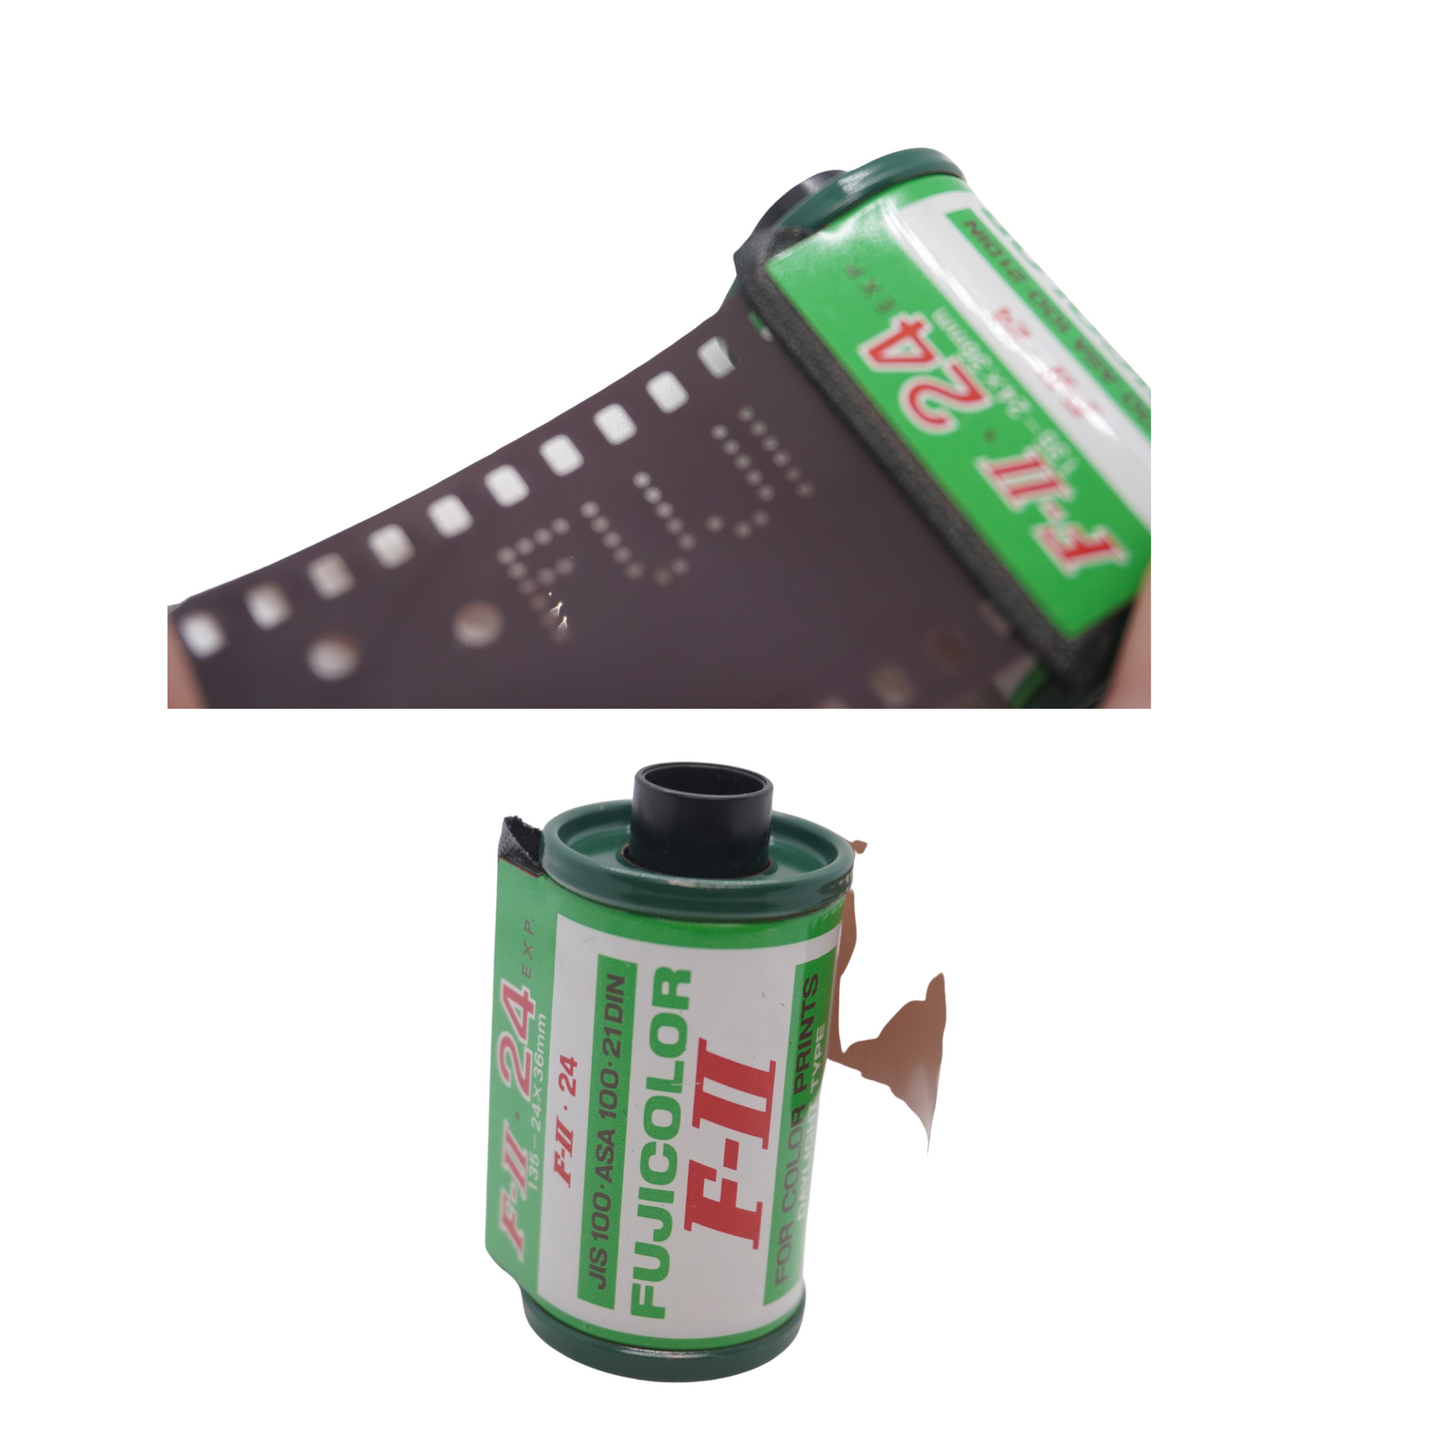 Fujifilm Fujicolor F-II 100 24exp expired film (1980/04)